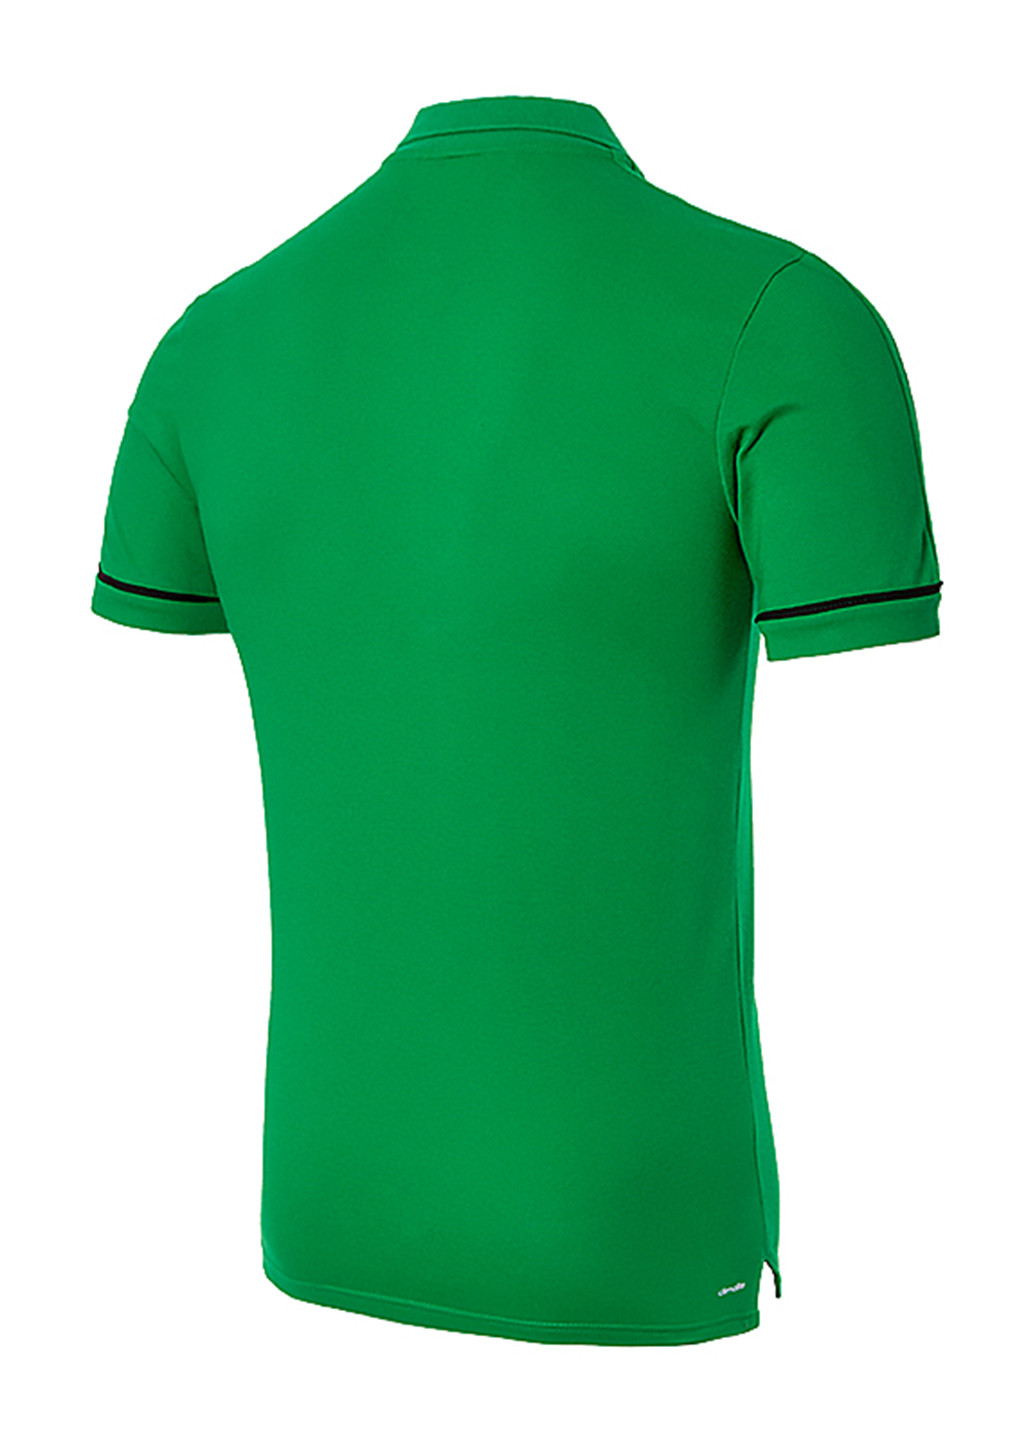 Зеленая футболка-поло для мужчин adidas с логотипом